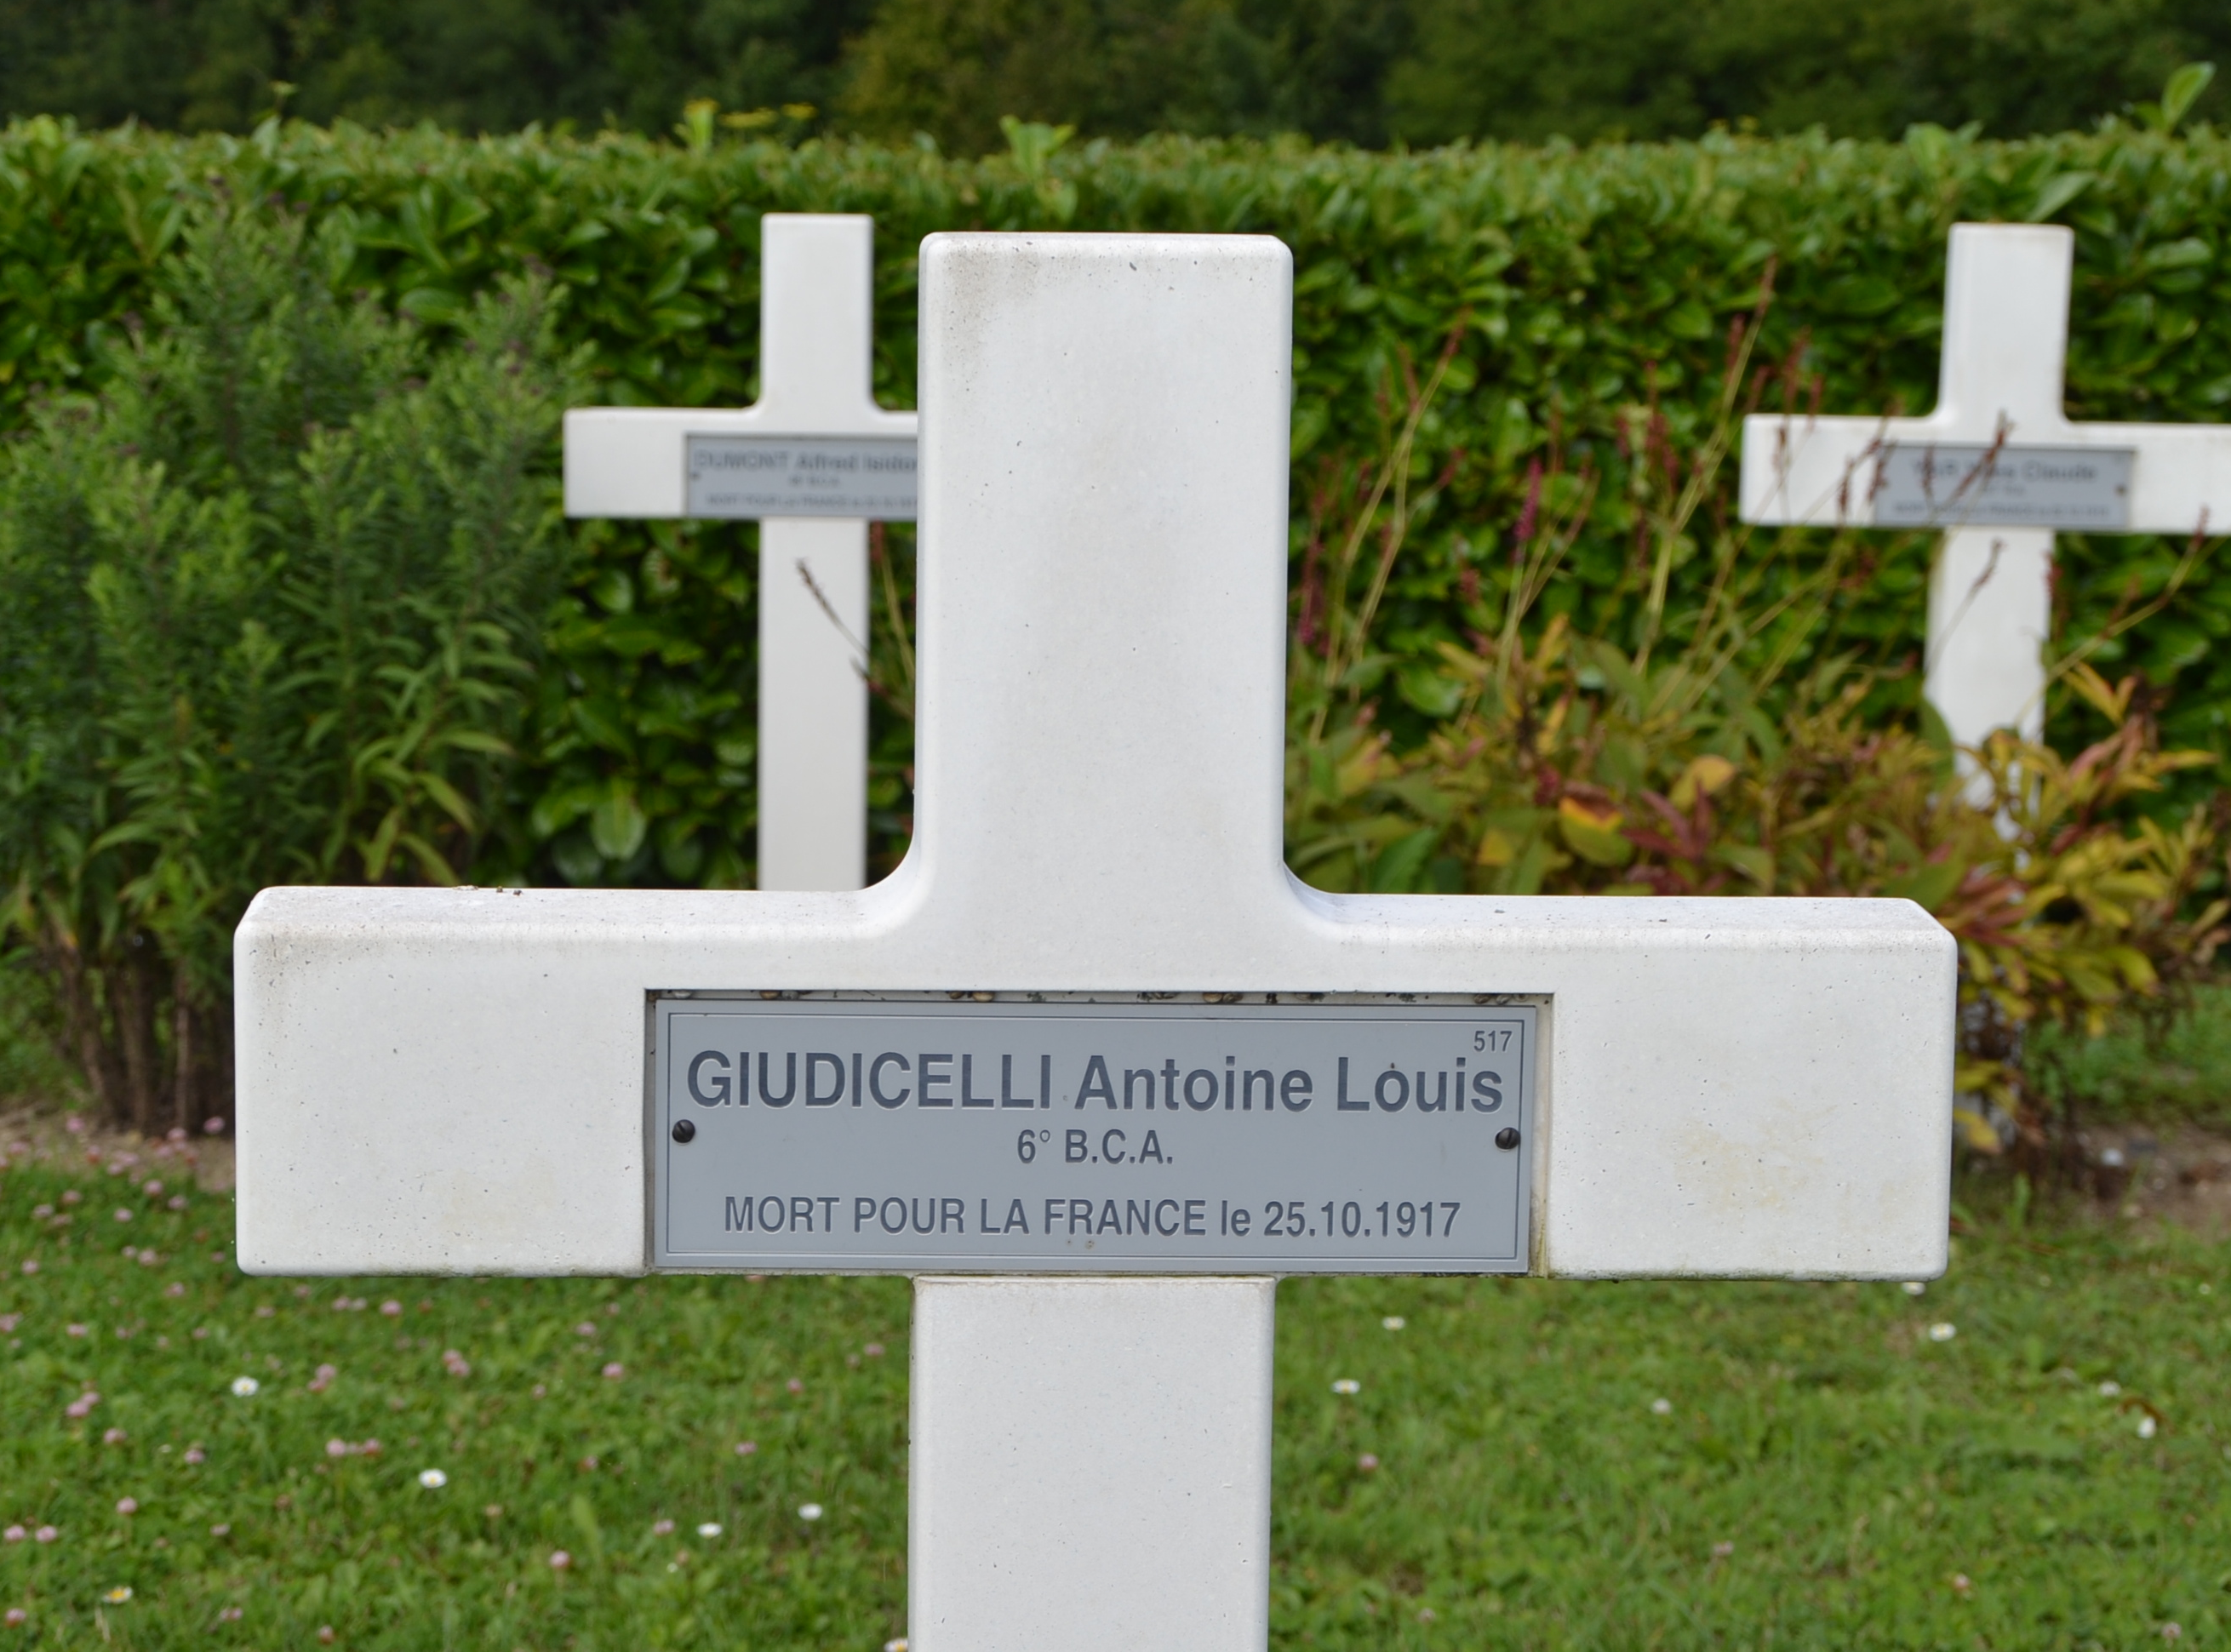 Giudicelli Antoine Louis sépulture à Vailly sur Aisne (Aisne)